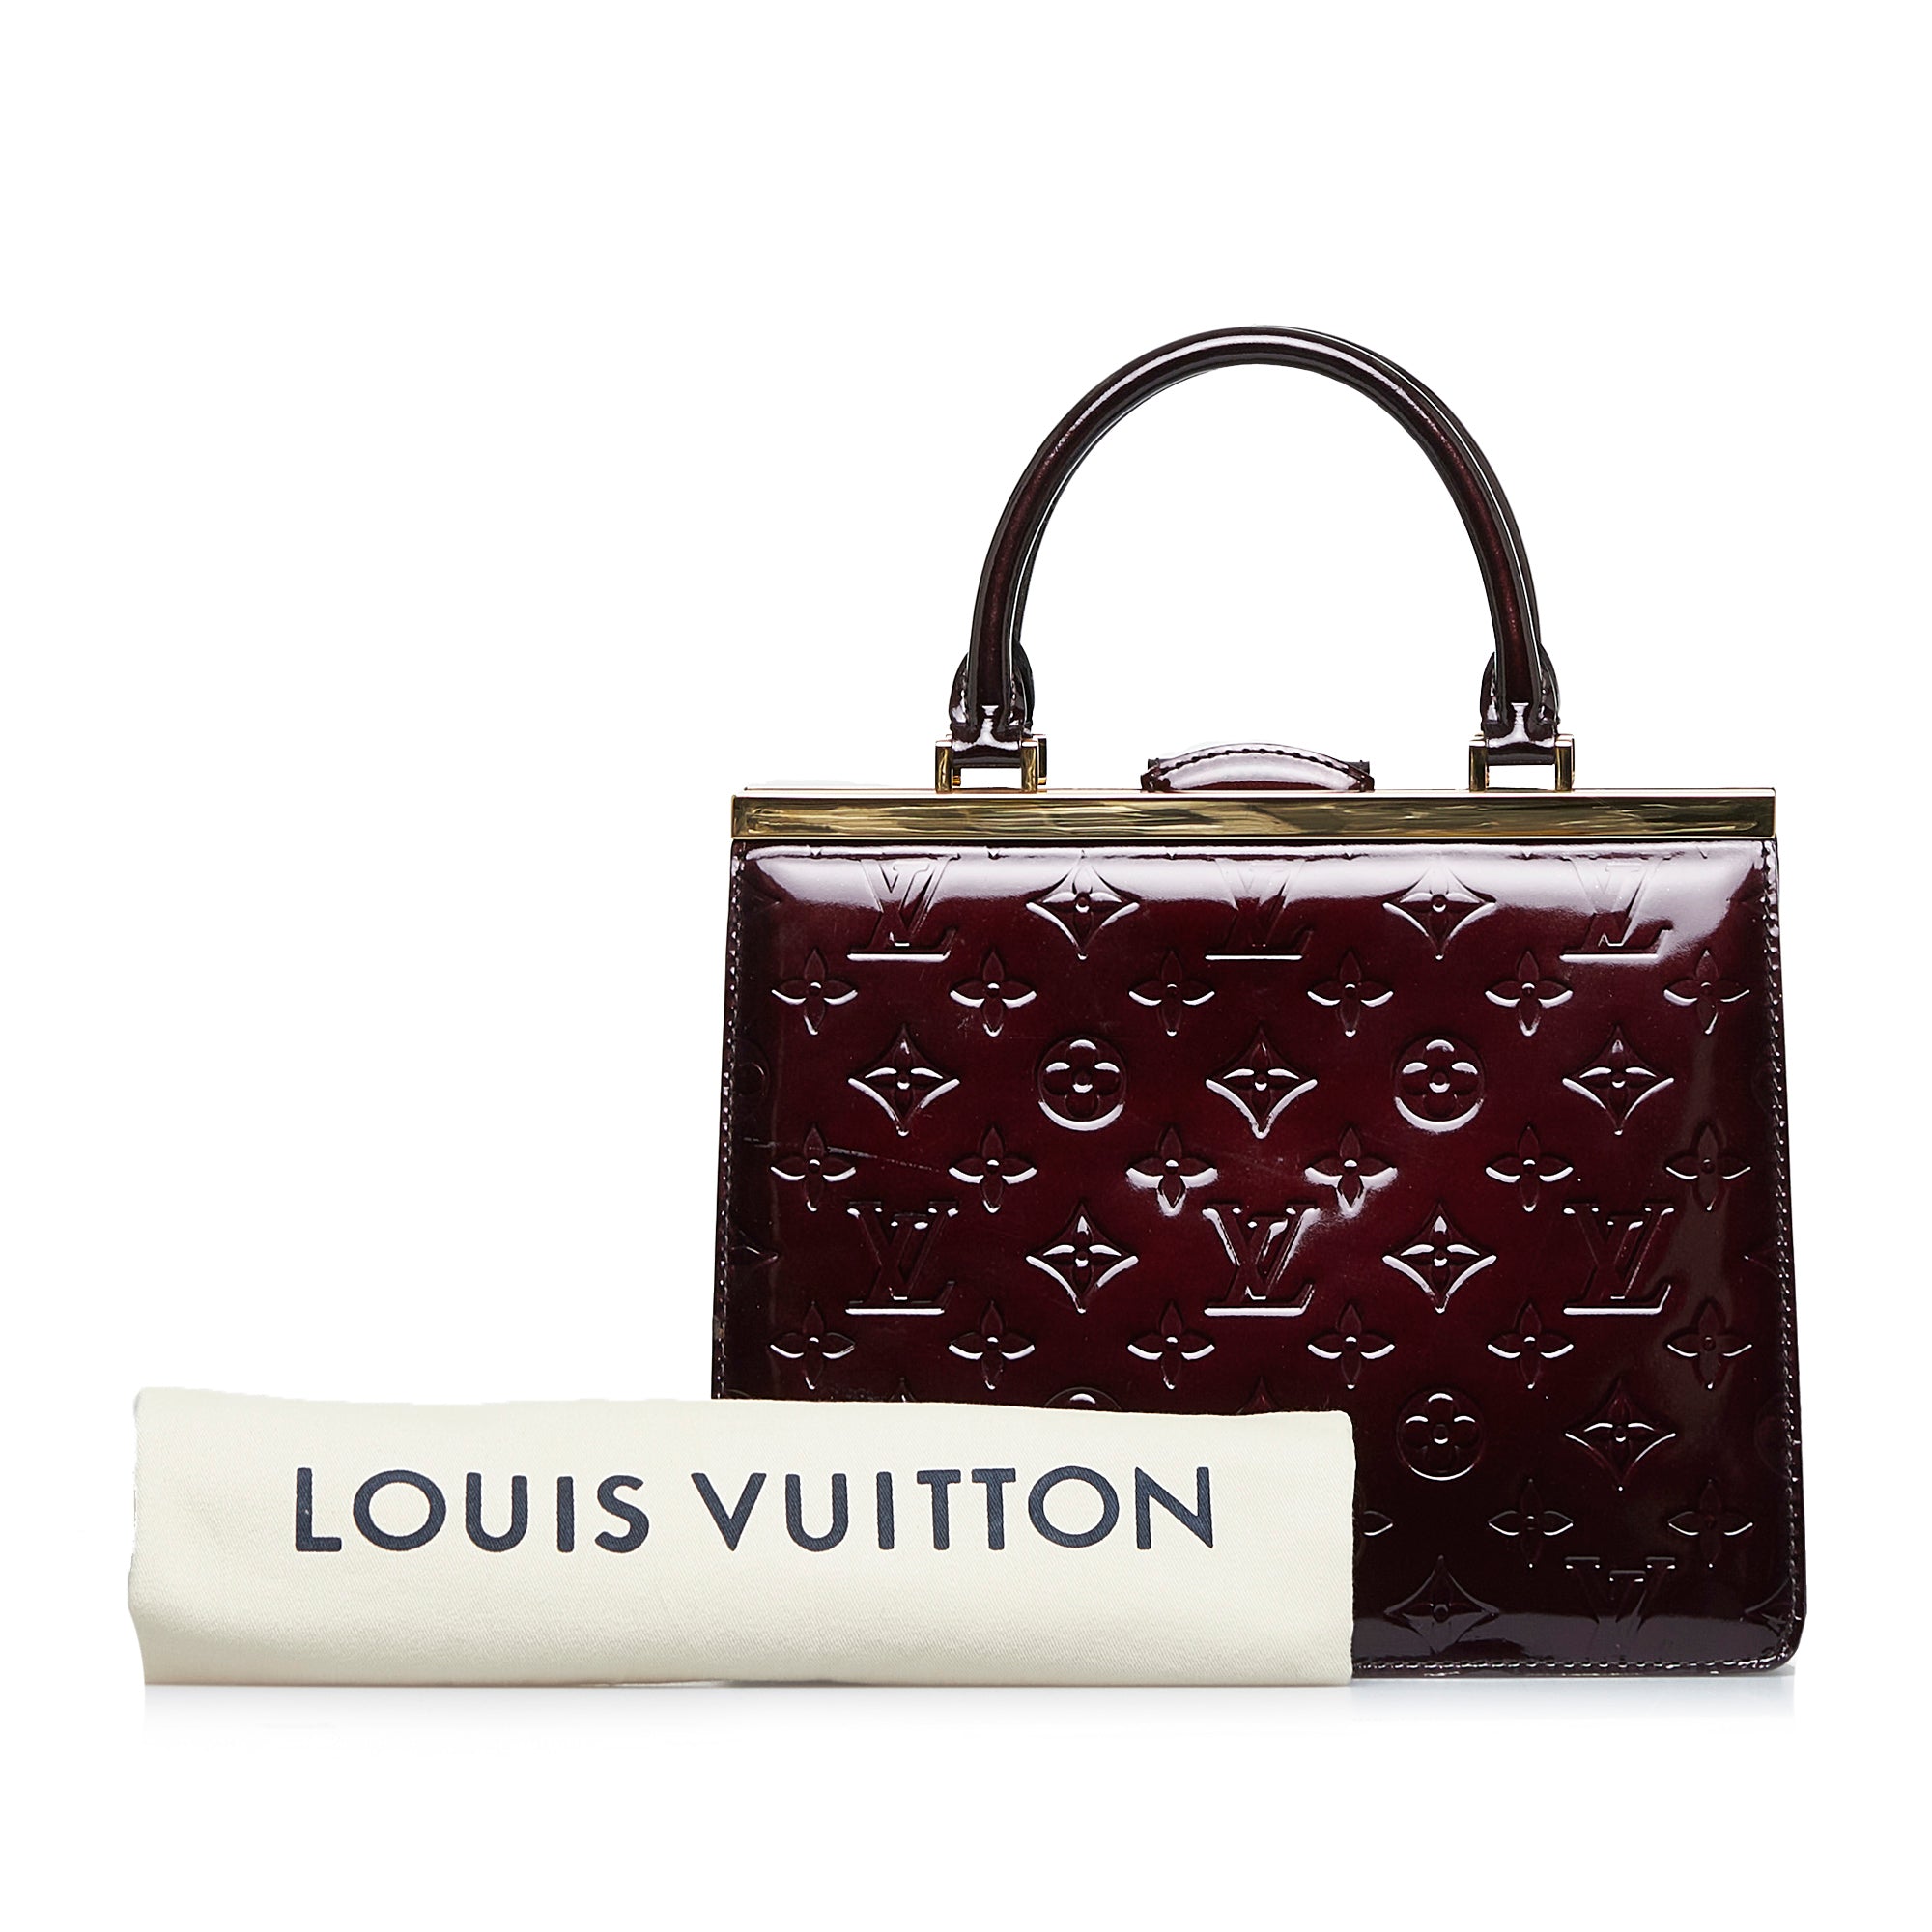 used Pre-owned Louis Vuitton Monogram Vernis Wilshire PM M93641 Women's Handbag Amarante (Good), Adult Unisex, Size: (HxWxD): 18cm x 30cm x 11cm /